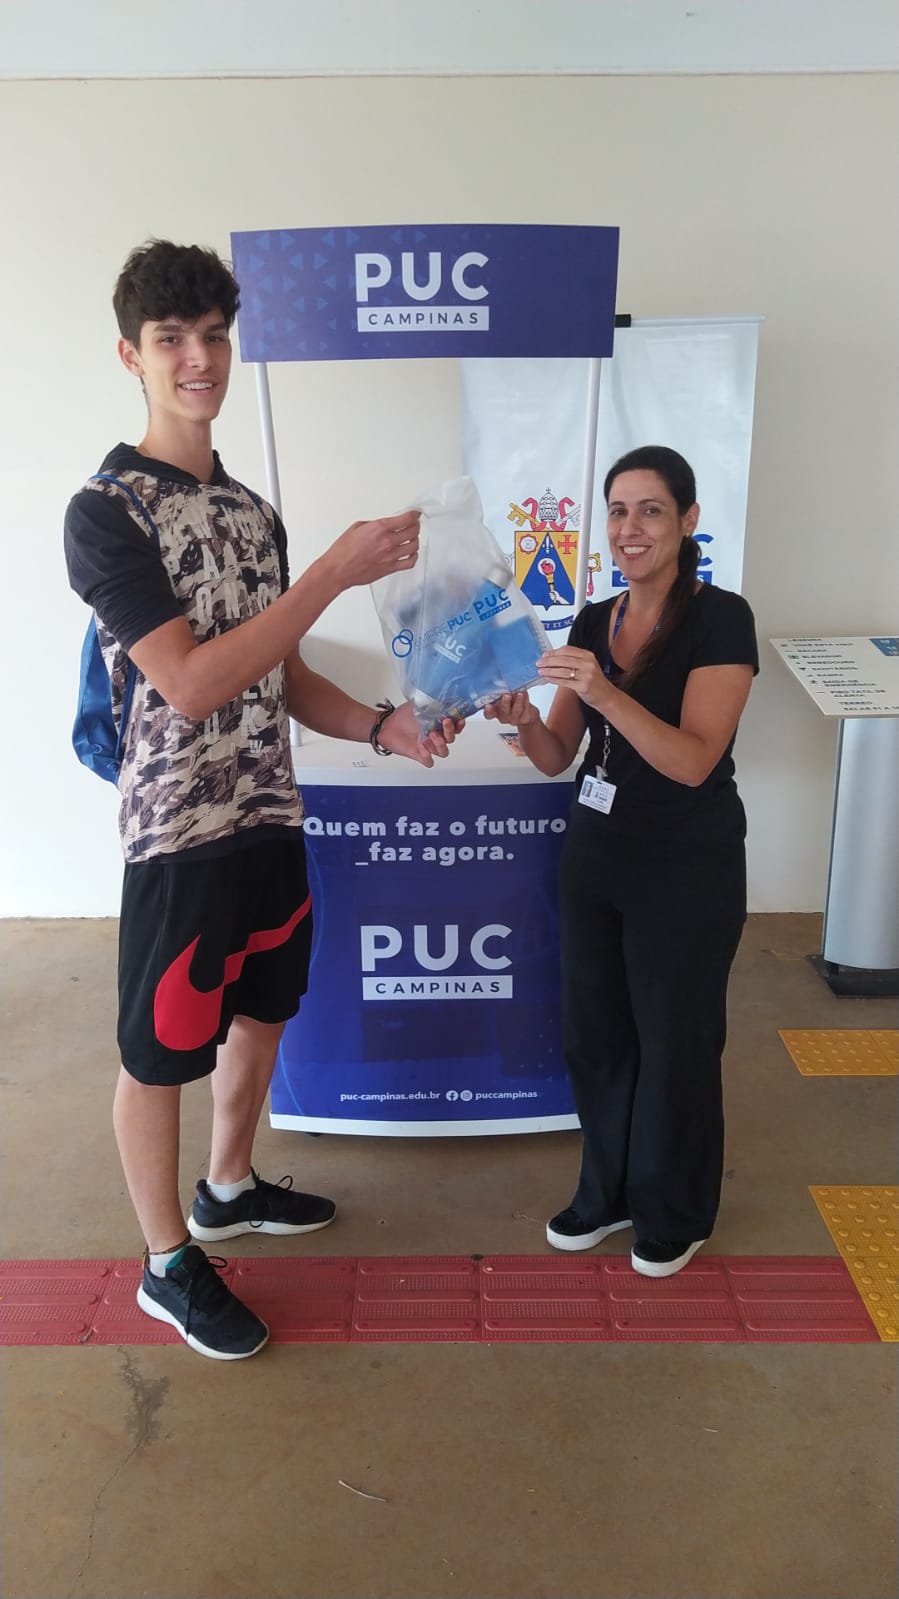 Portal PUC-Campinas » » 11º Jogo Concurso On-line de Matemática